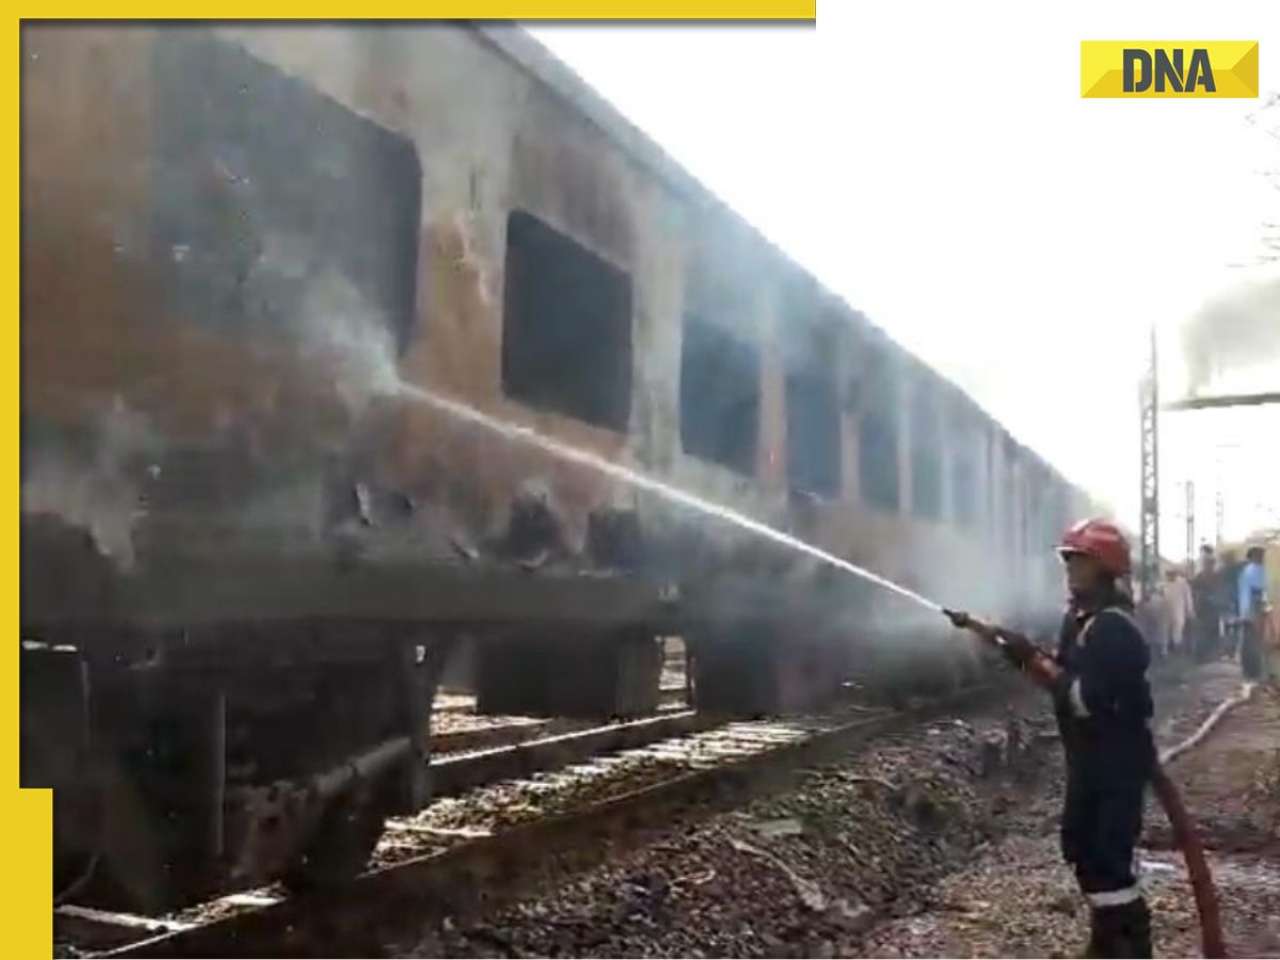 Four coaches of Taj Express catch fire in Delhi, watch video here